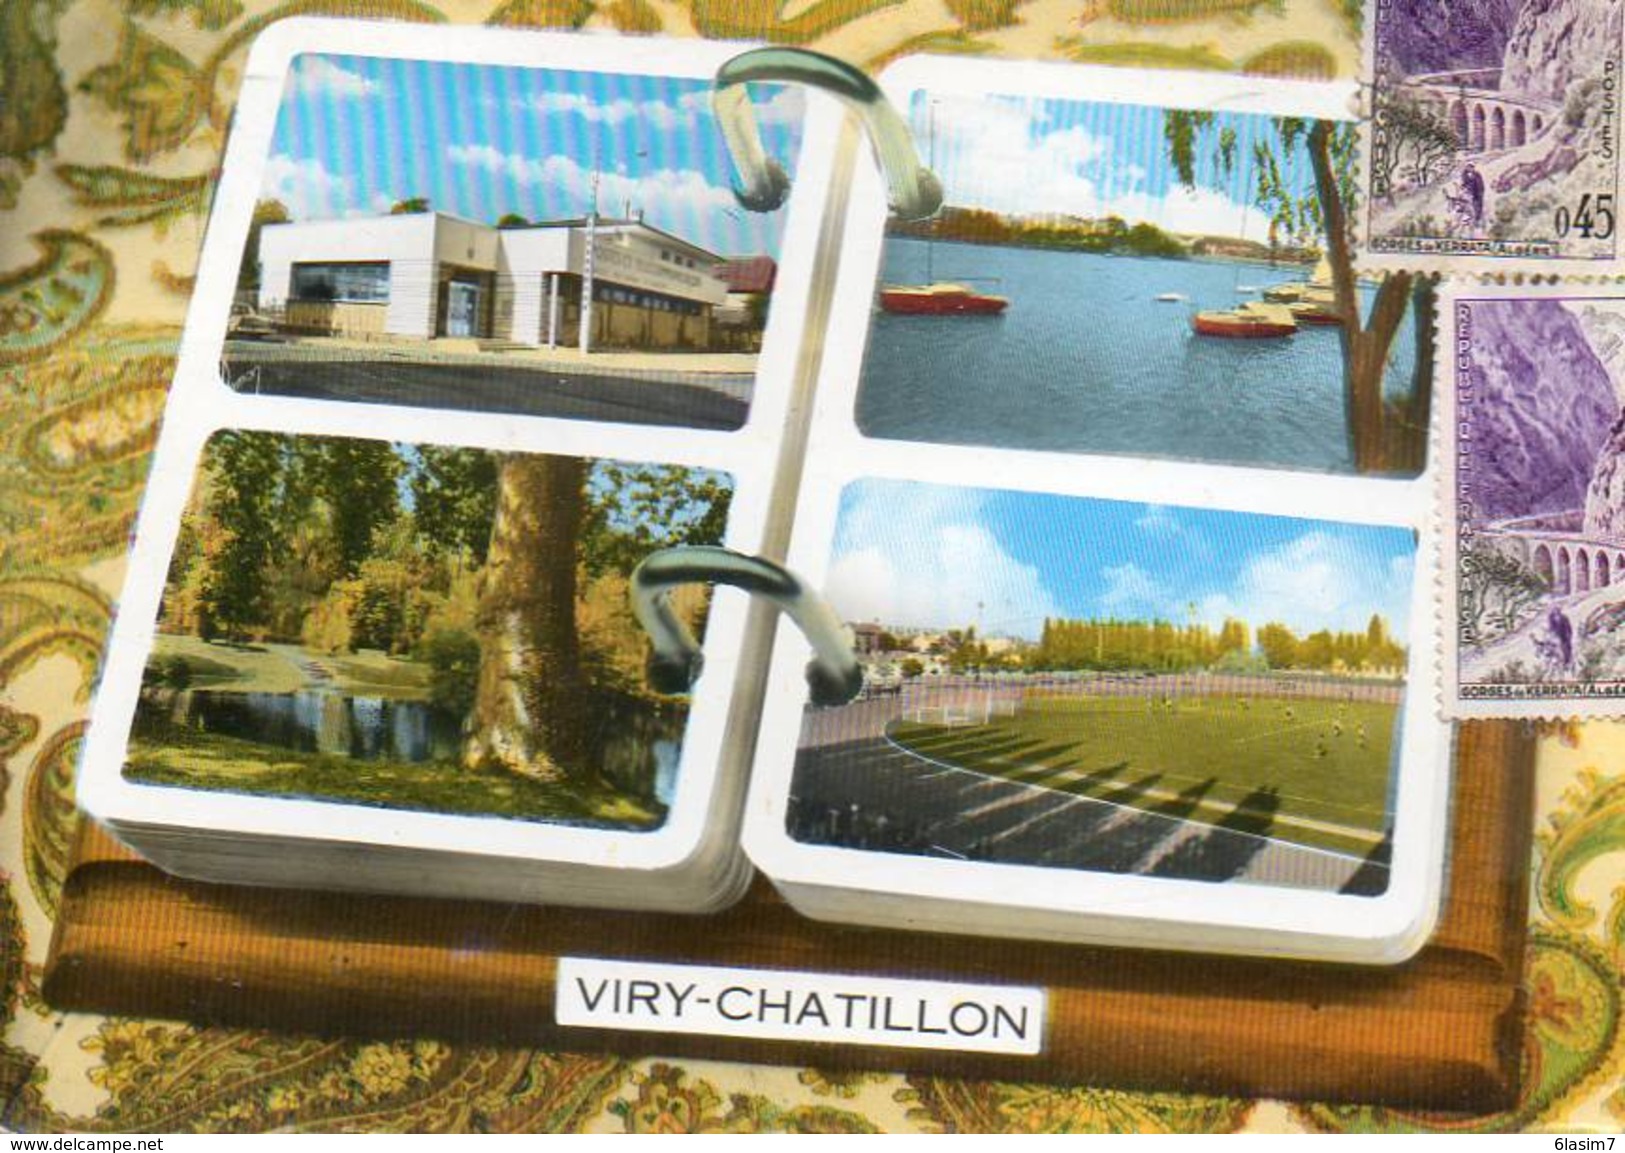 CPSM - VIRY-CHATILLON (91) - Carte Multi-Vues Dans Les Années 70 - Viry-Châtillon